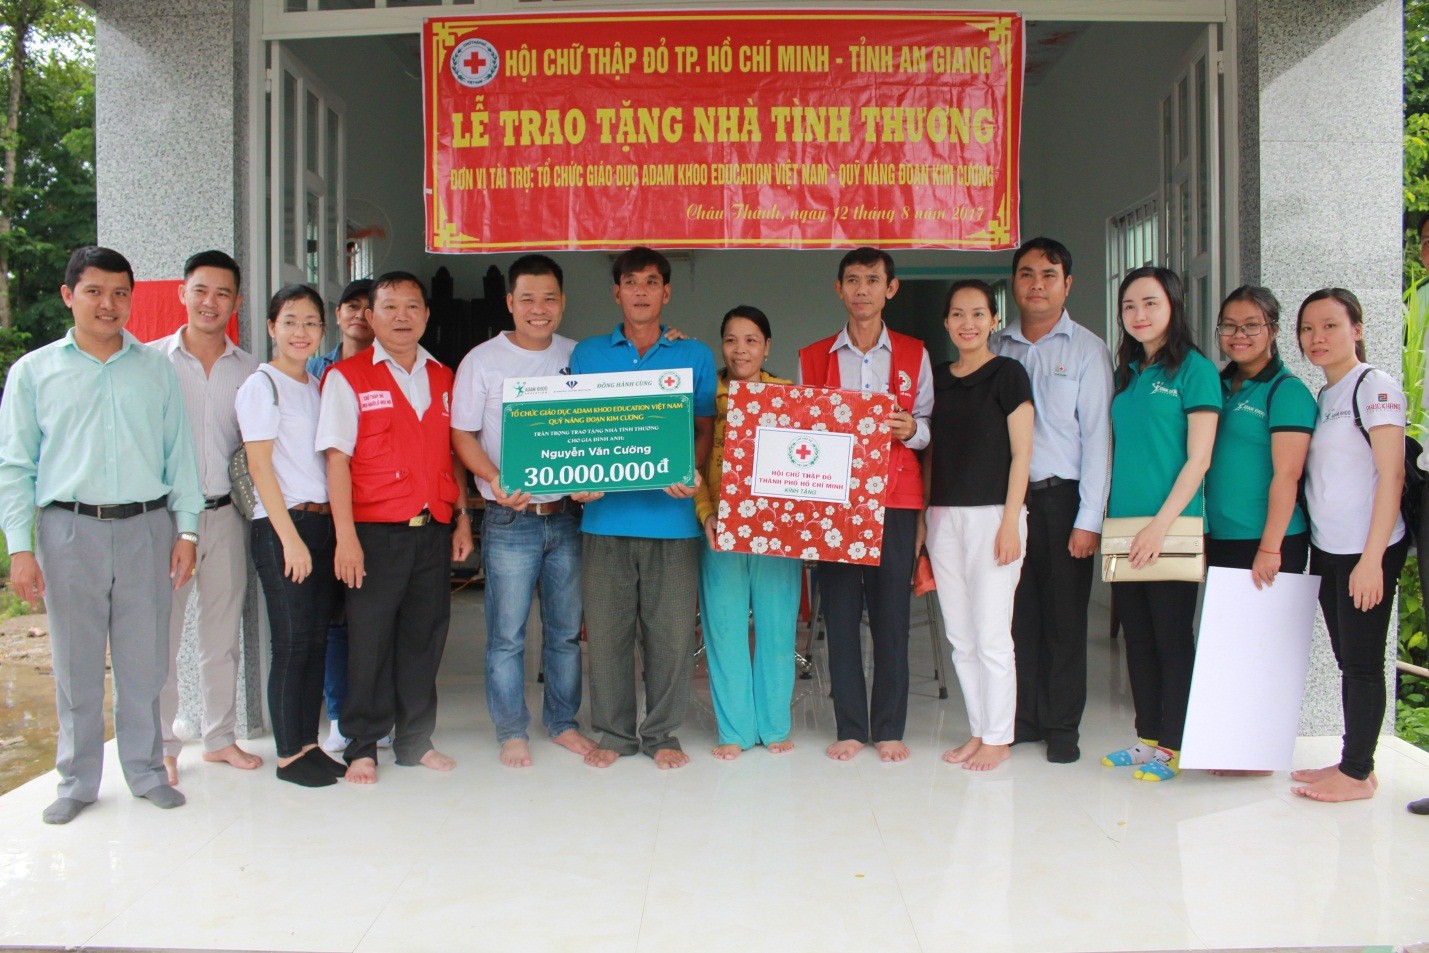 Chuỗi từ thiện hỗ trợ bà con nghèo tại An Giang của Adam Khoo Education